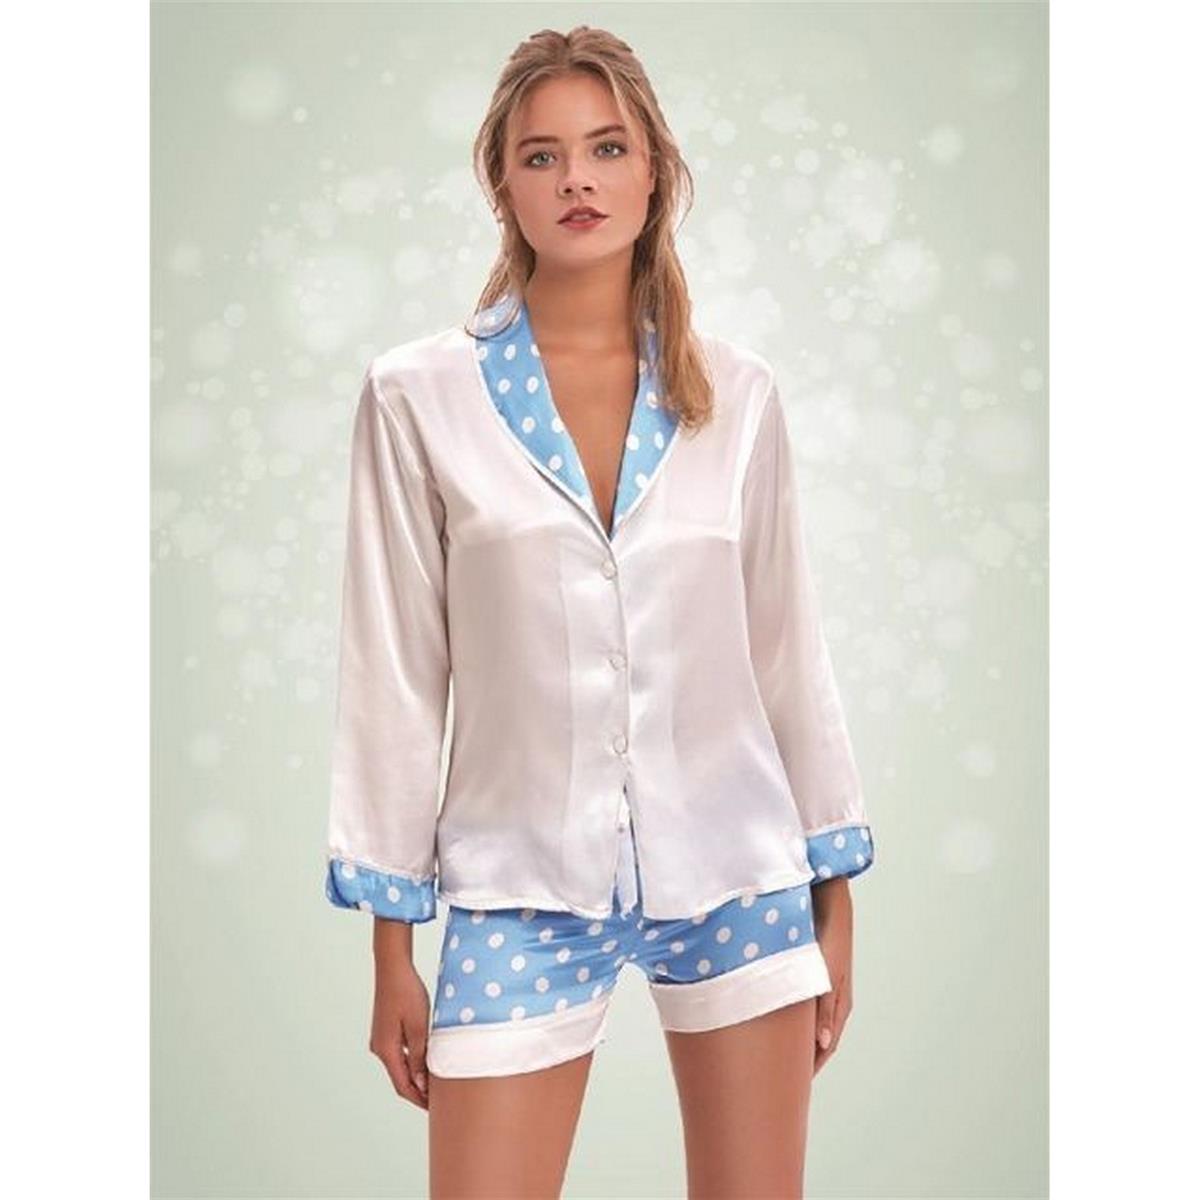 NBB Kadın Saten Şortlu Pijama Takımı modelleri İndirimli Fiyatlarla  ücretsiz kargo hızlı teslimat ca lia markalı ürünler online satış  dorebella.com